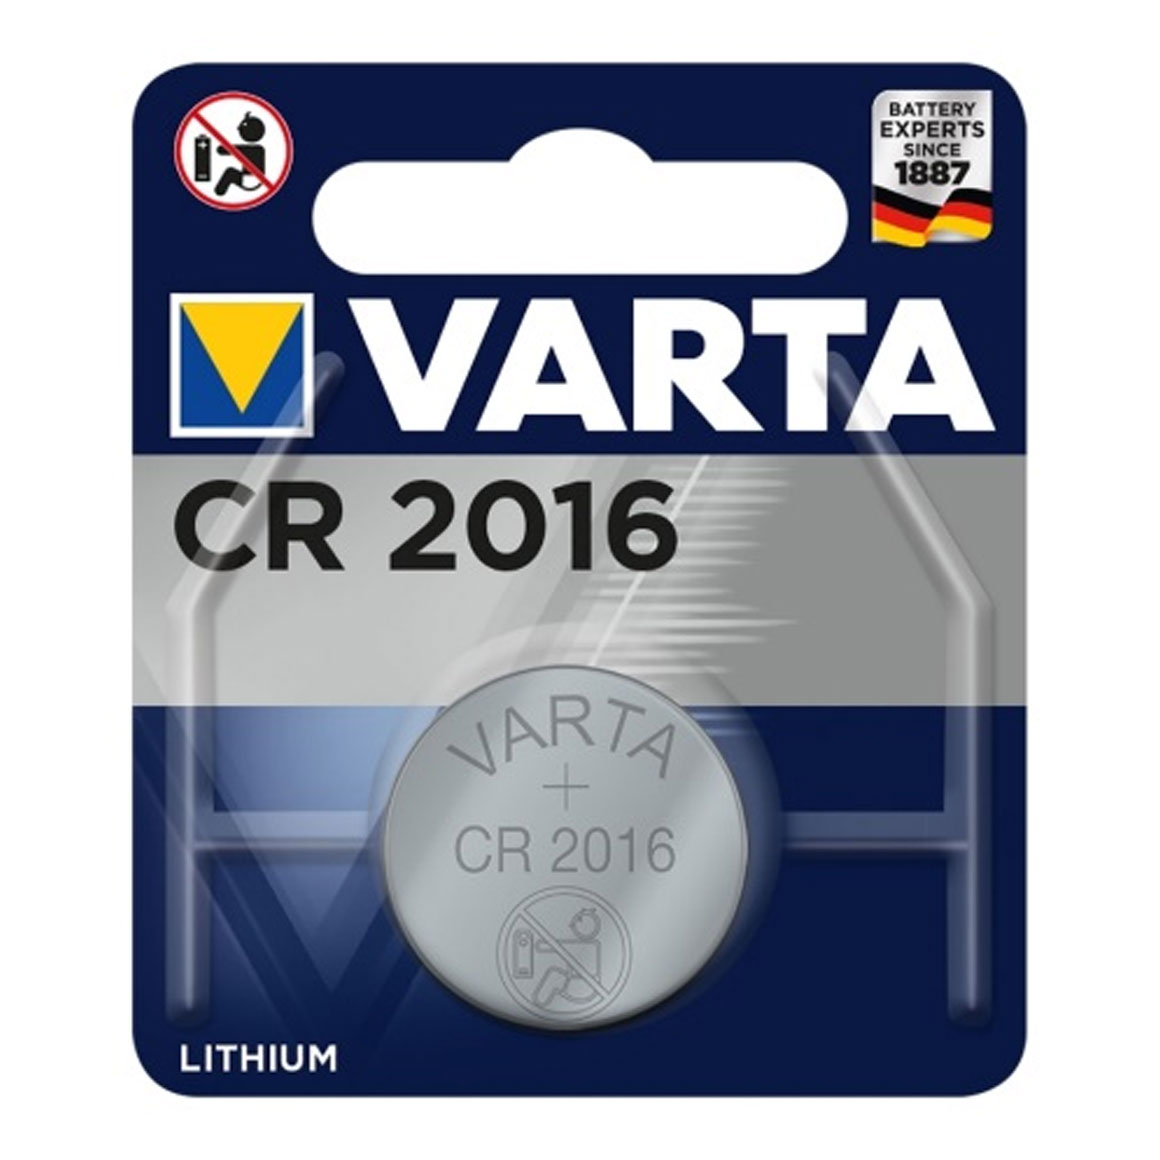 Varta CR2016 3V Lithium knoopcel batterij